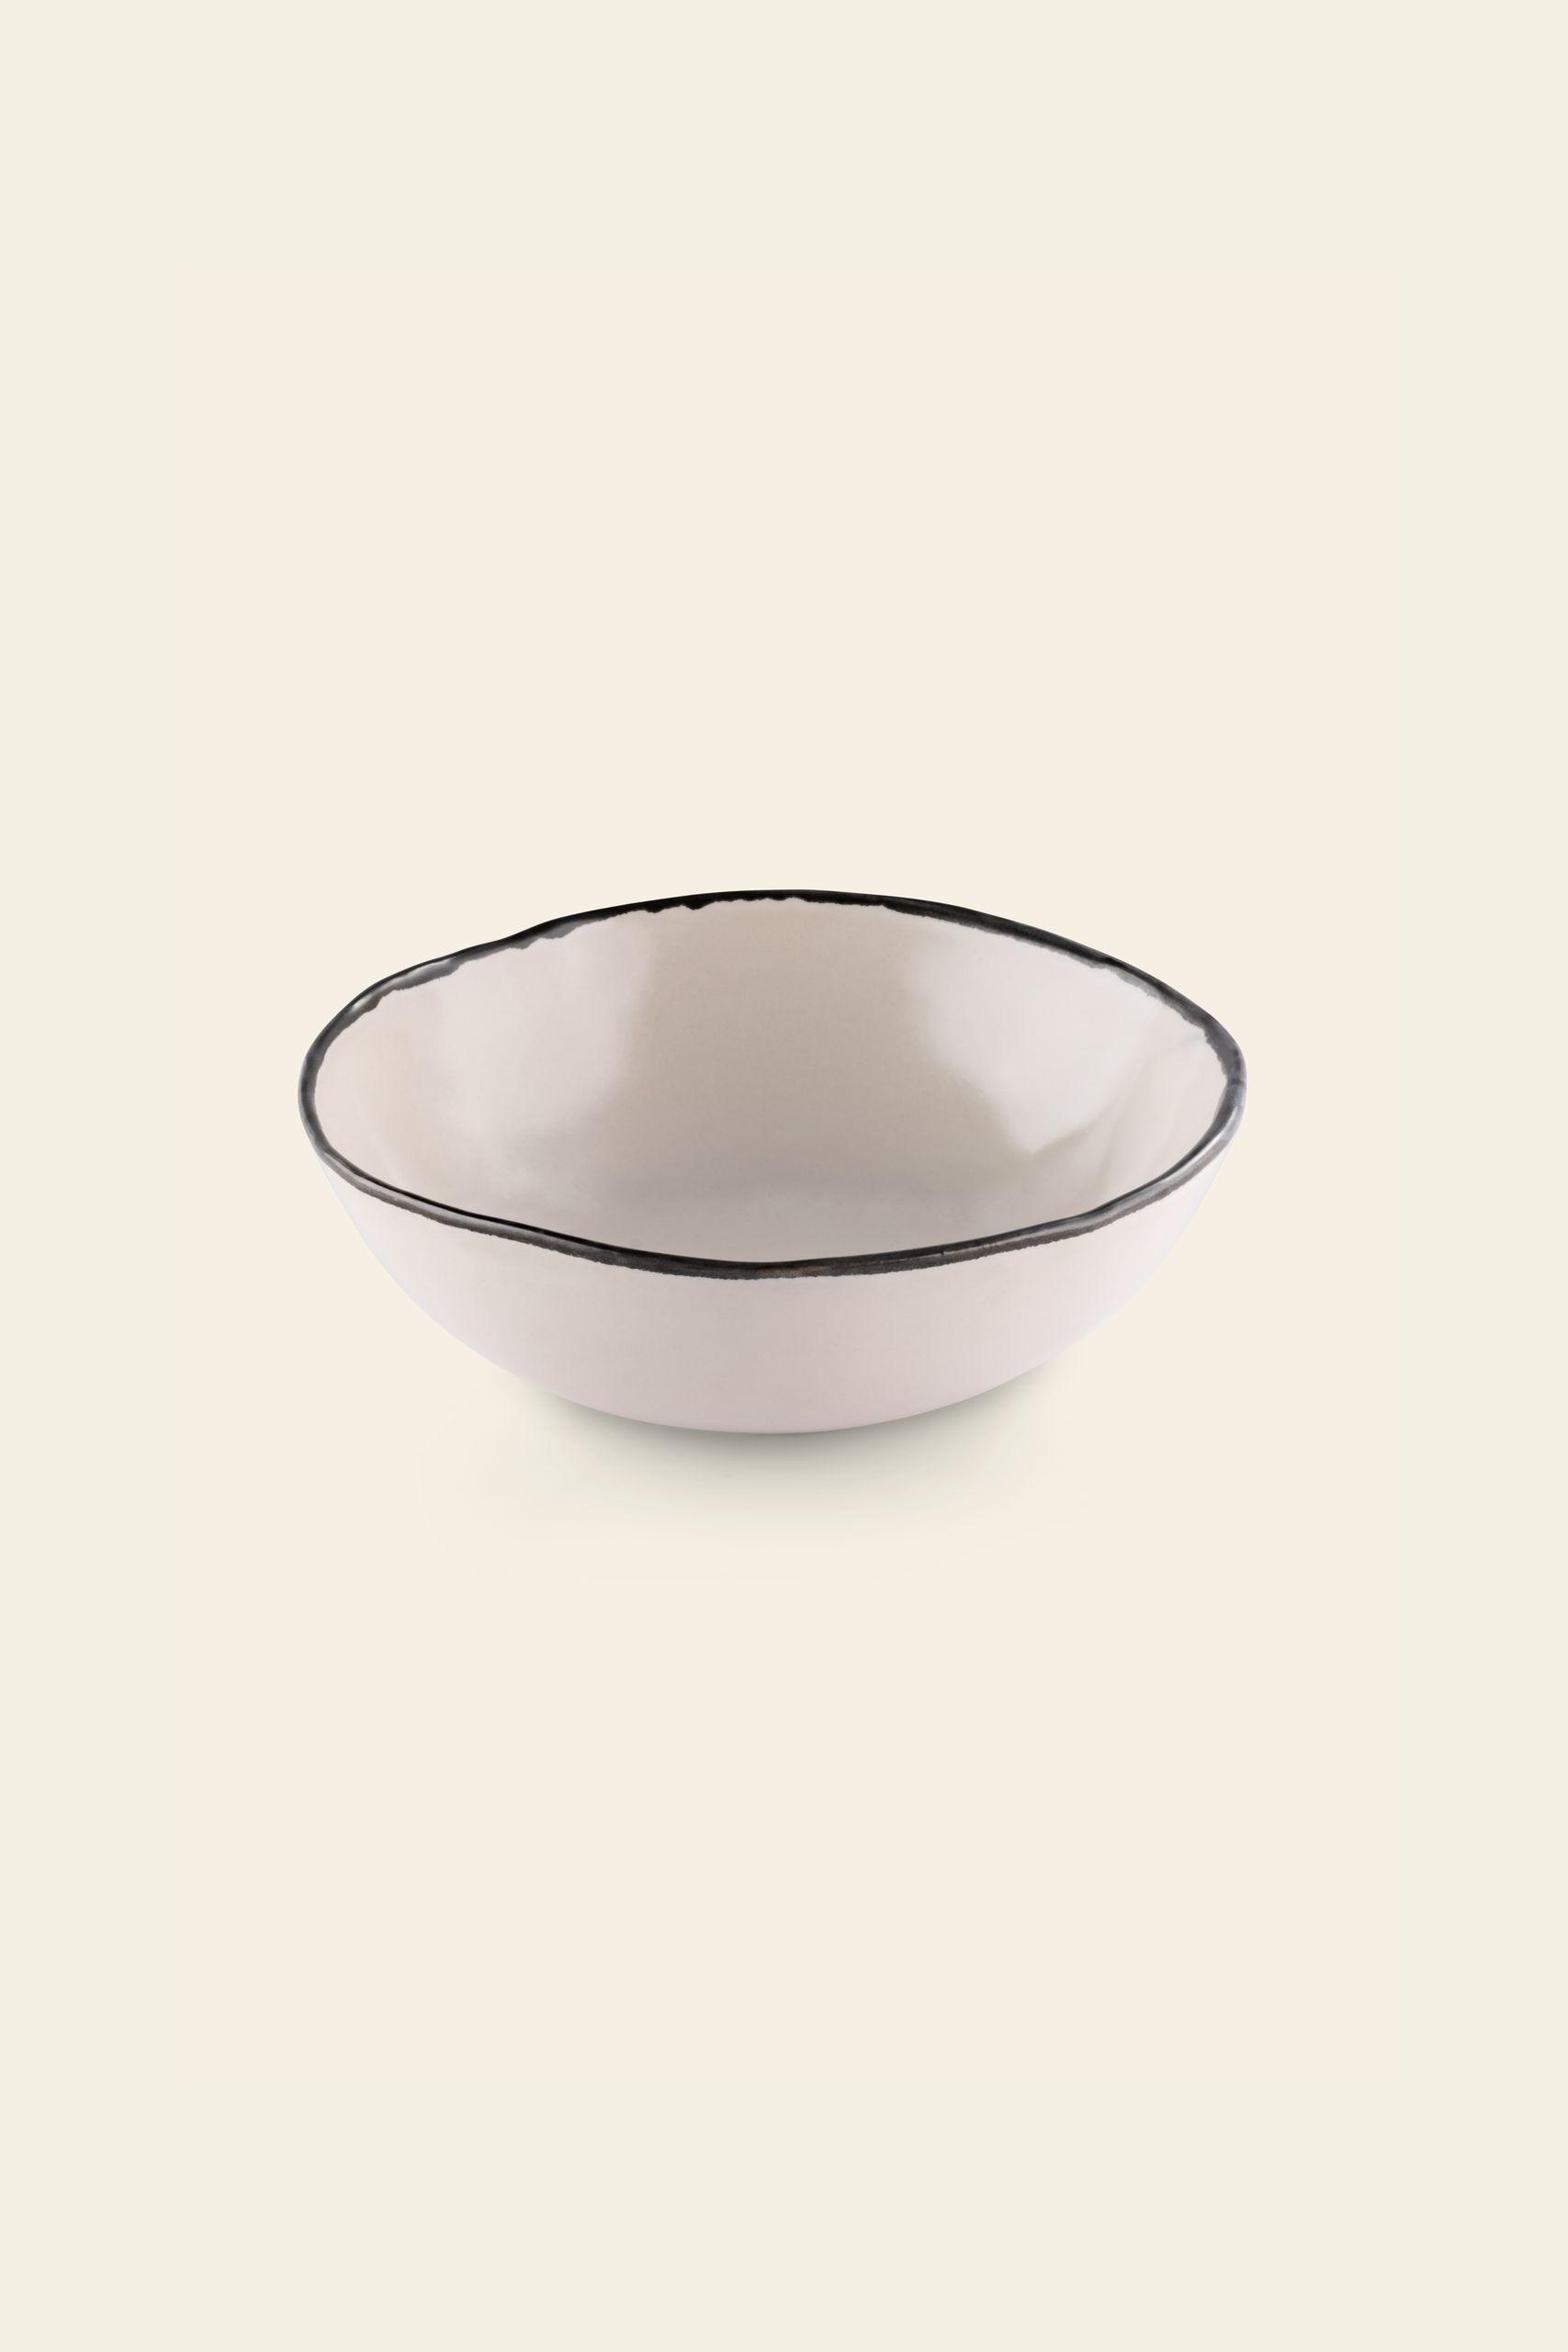 Kra Sanctuary Andaman Free Form Soup Bowl White 1